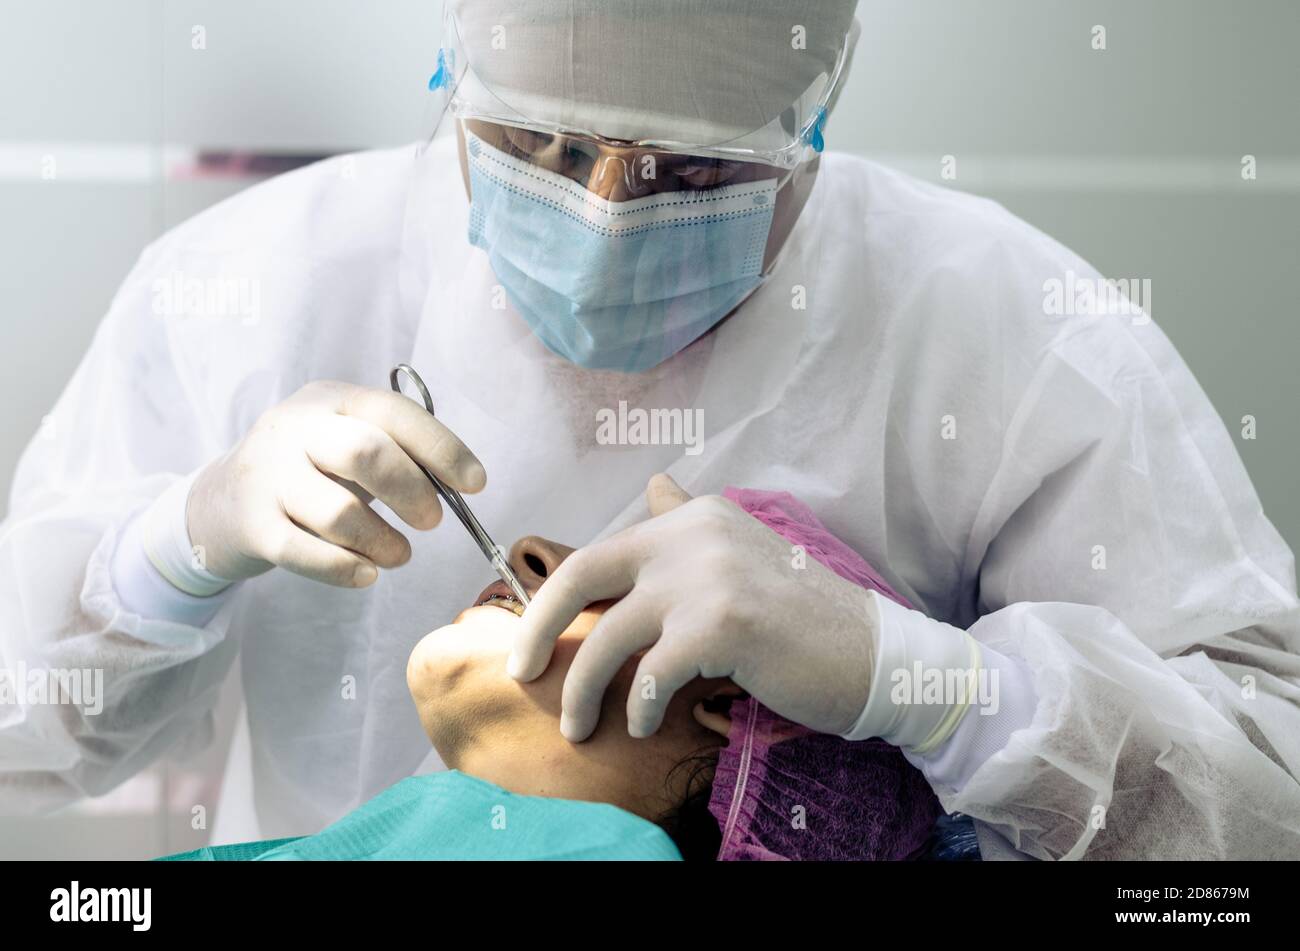 Der Zahnarzt oder Arzt trägt im Hintergrund der Zahnarztpraxis einen weißen  medizinischen Kittel, eine Maske und eine Schutzbrille. Gesundheits- und  Schutzkonzept Stockfotografie - Alamy